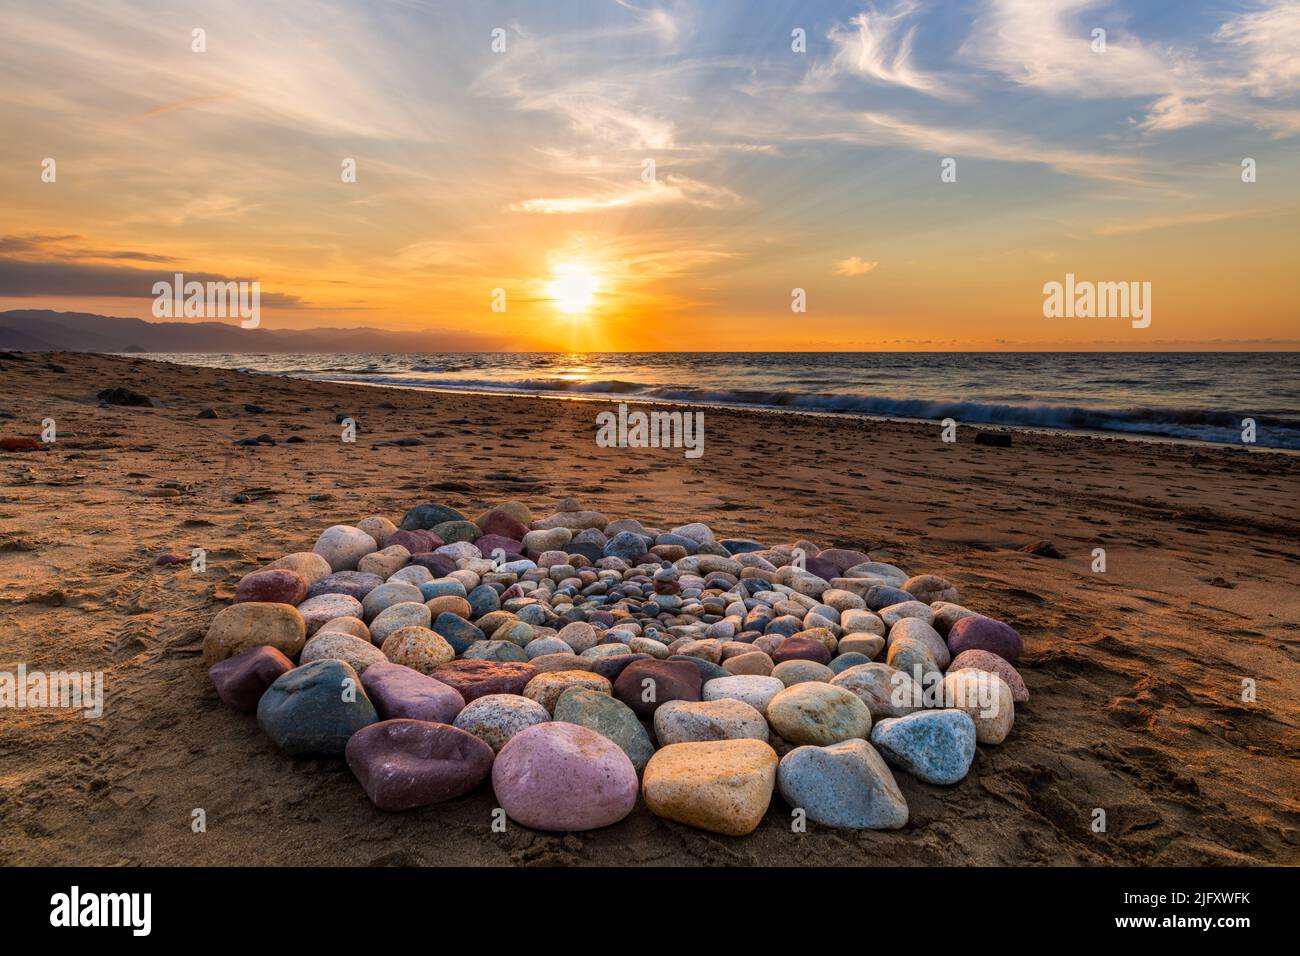 Las piedras rituales para la ceremonia espiritual se organizan en un círculo durante la puesta de sol en la playa Foto de stock